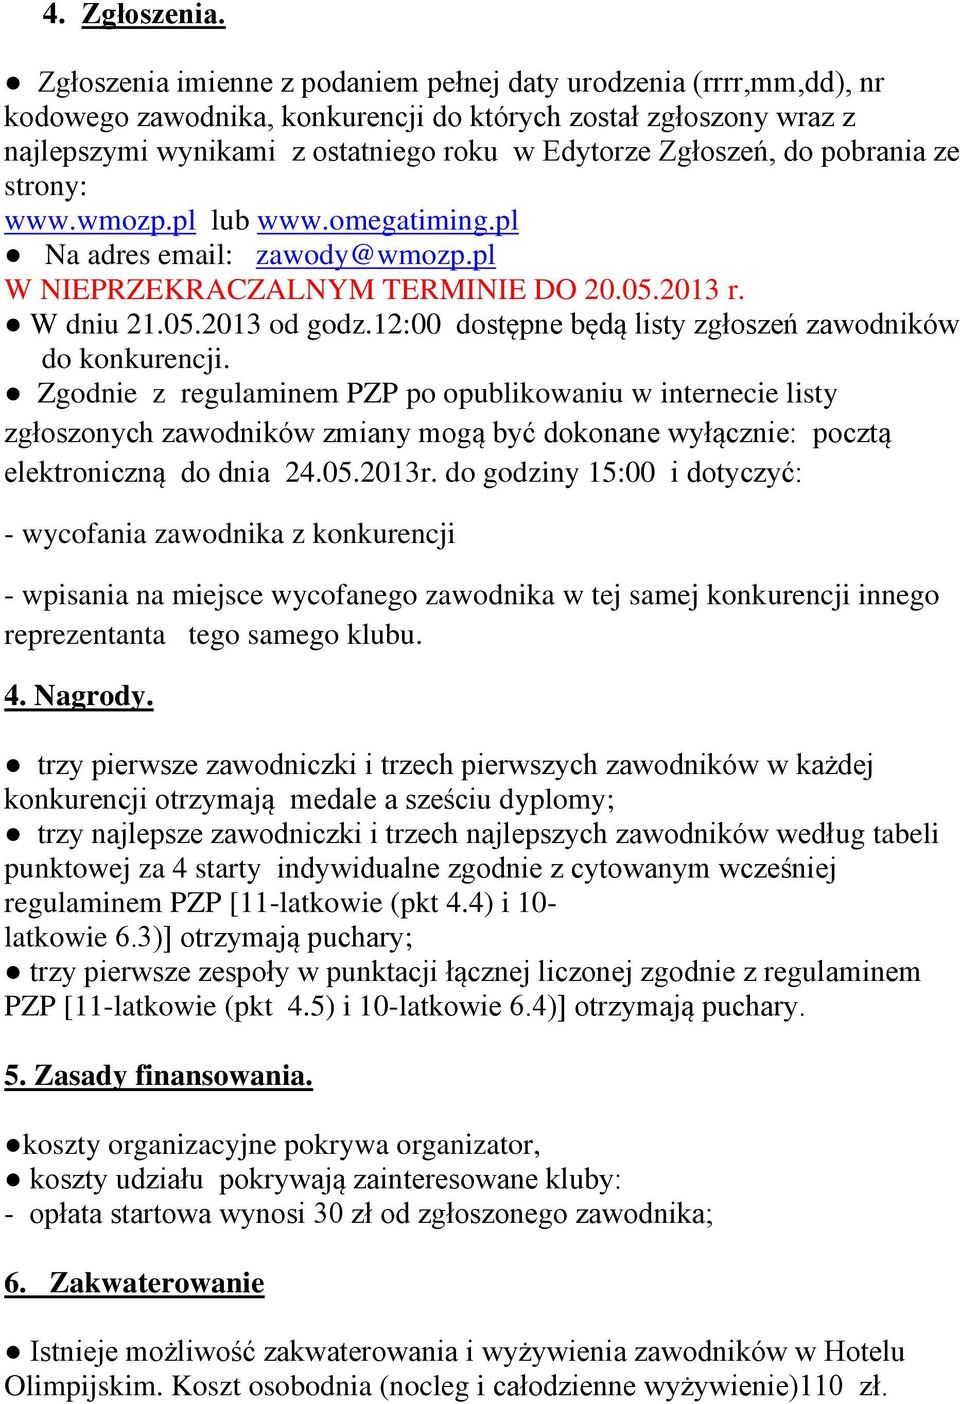 pobrania ze strony: www.wmozp.pl lub www.omegatiming.pl Na adres email: zawody@wmozp.pl W NIEPRZEKRACZALNYM TERMINIE DO 20.05.2013 r. W dniu 21.05.2013 od godz.